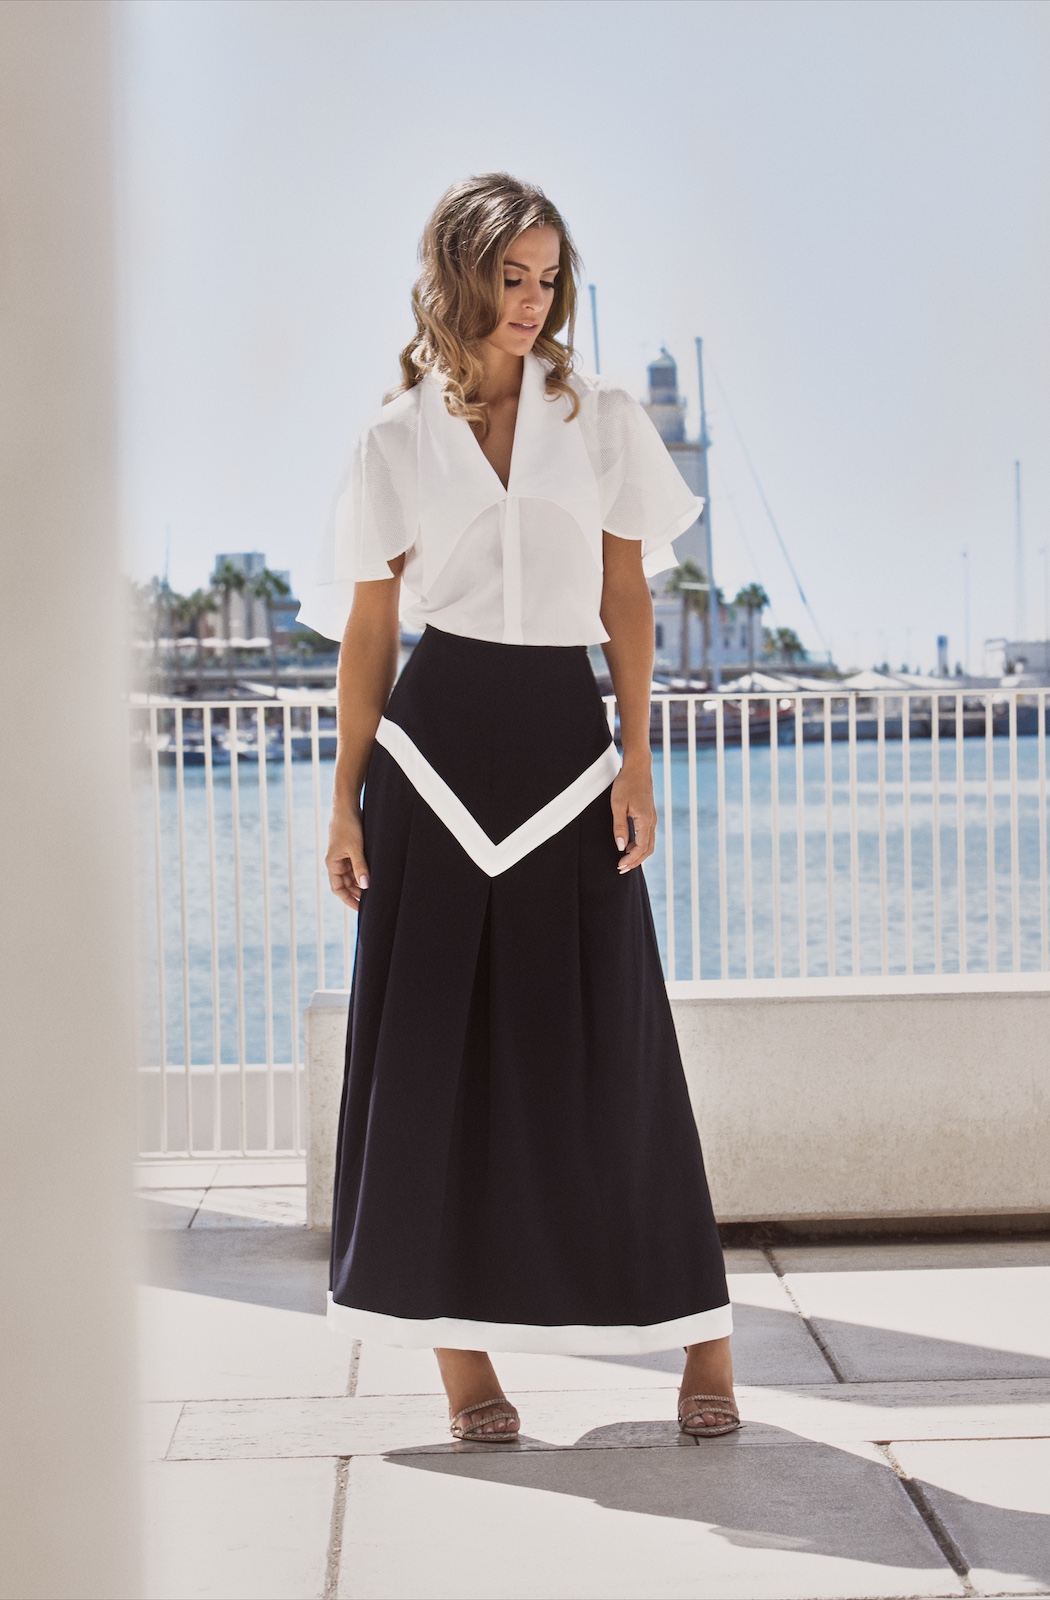  Riviera Top - Nautical Skirt  